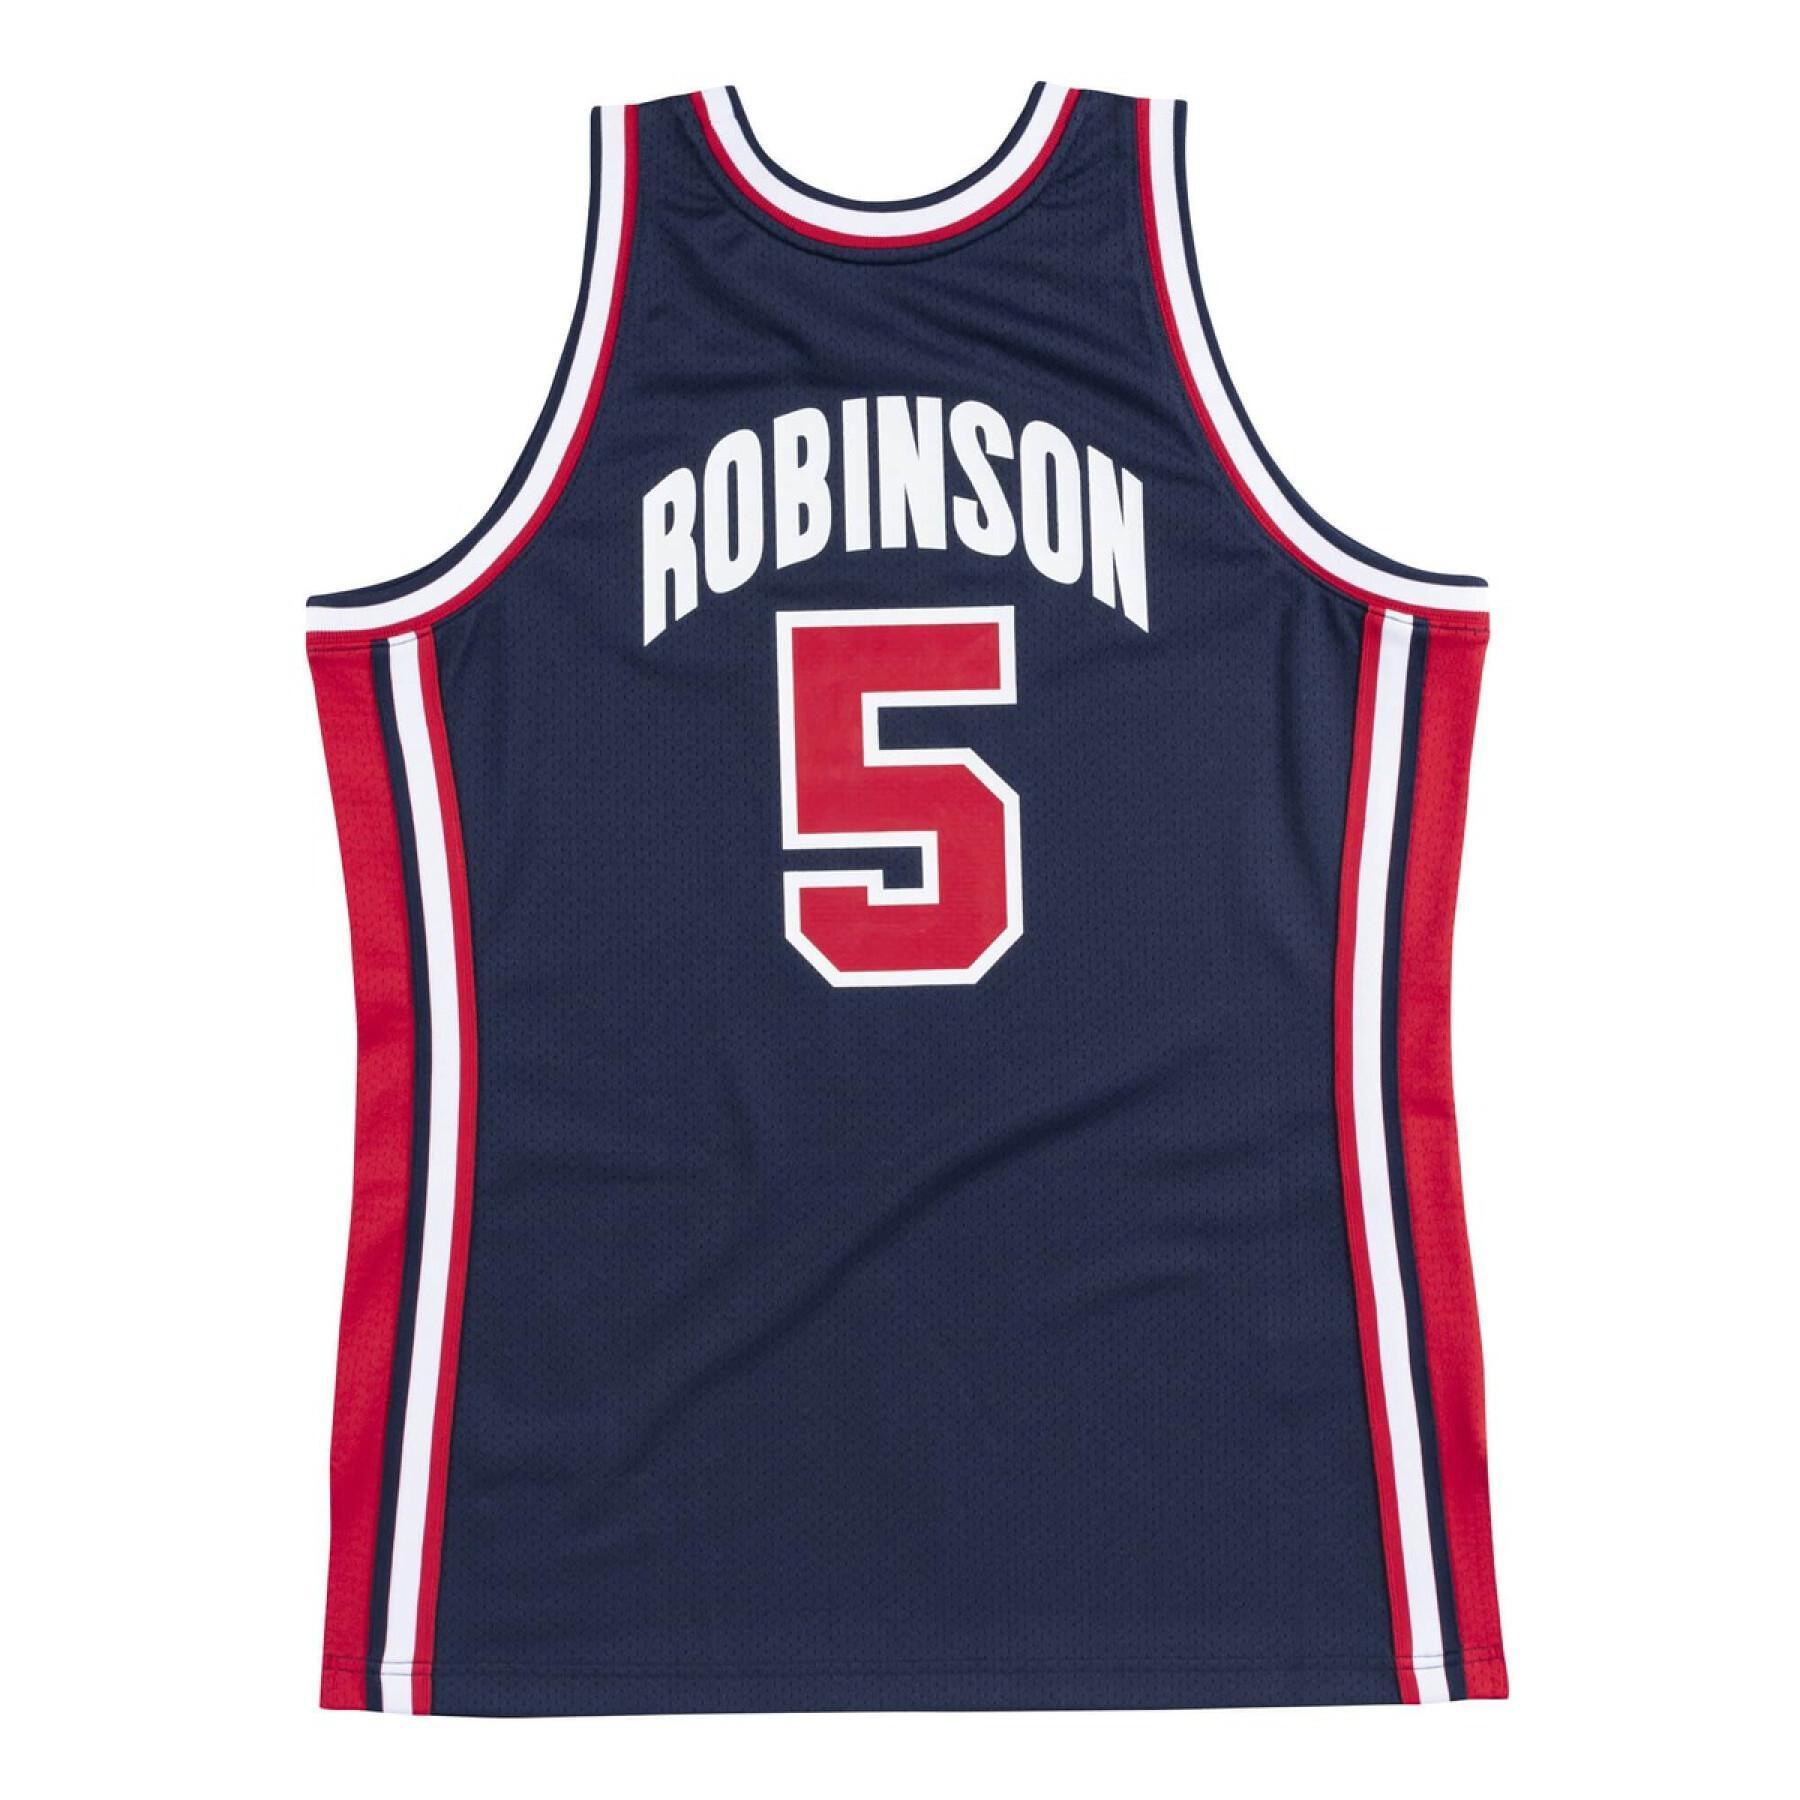 Camiseta auténtica del equipo USA nba David Robinson